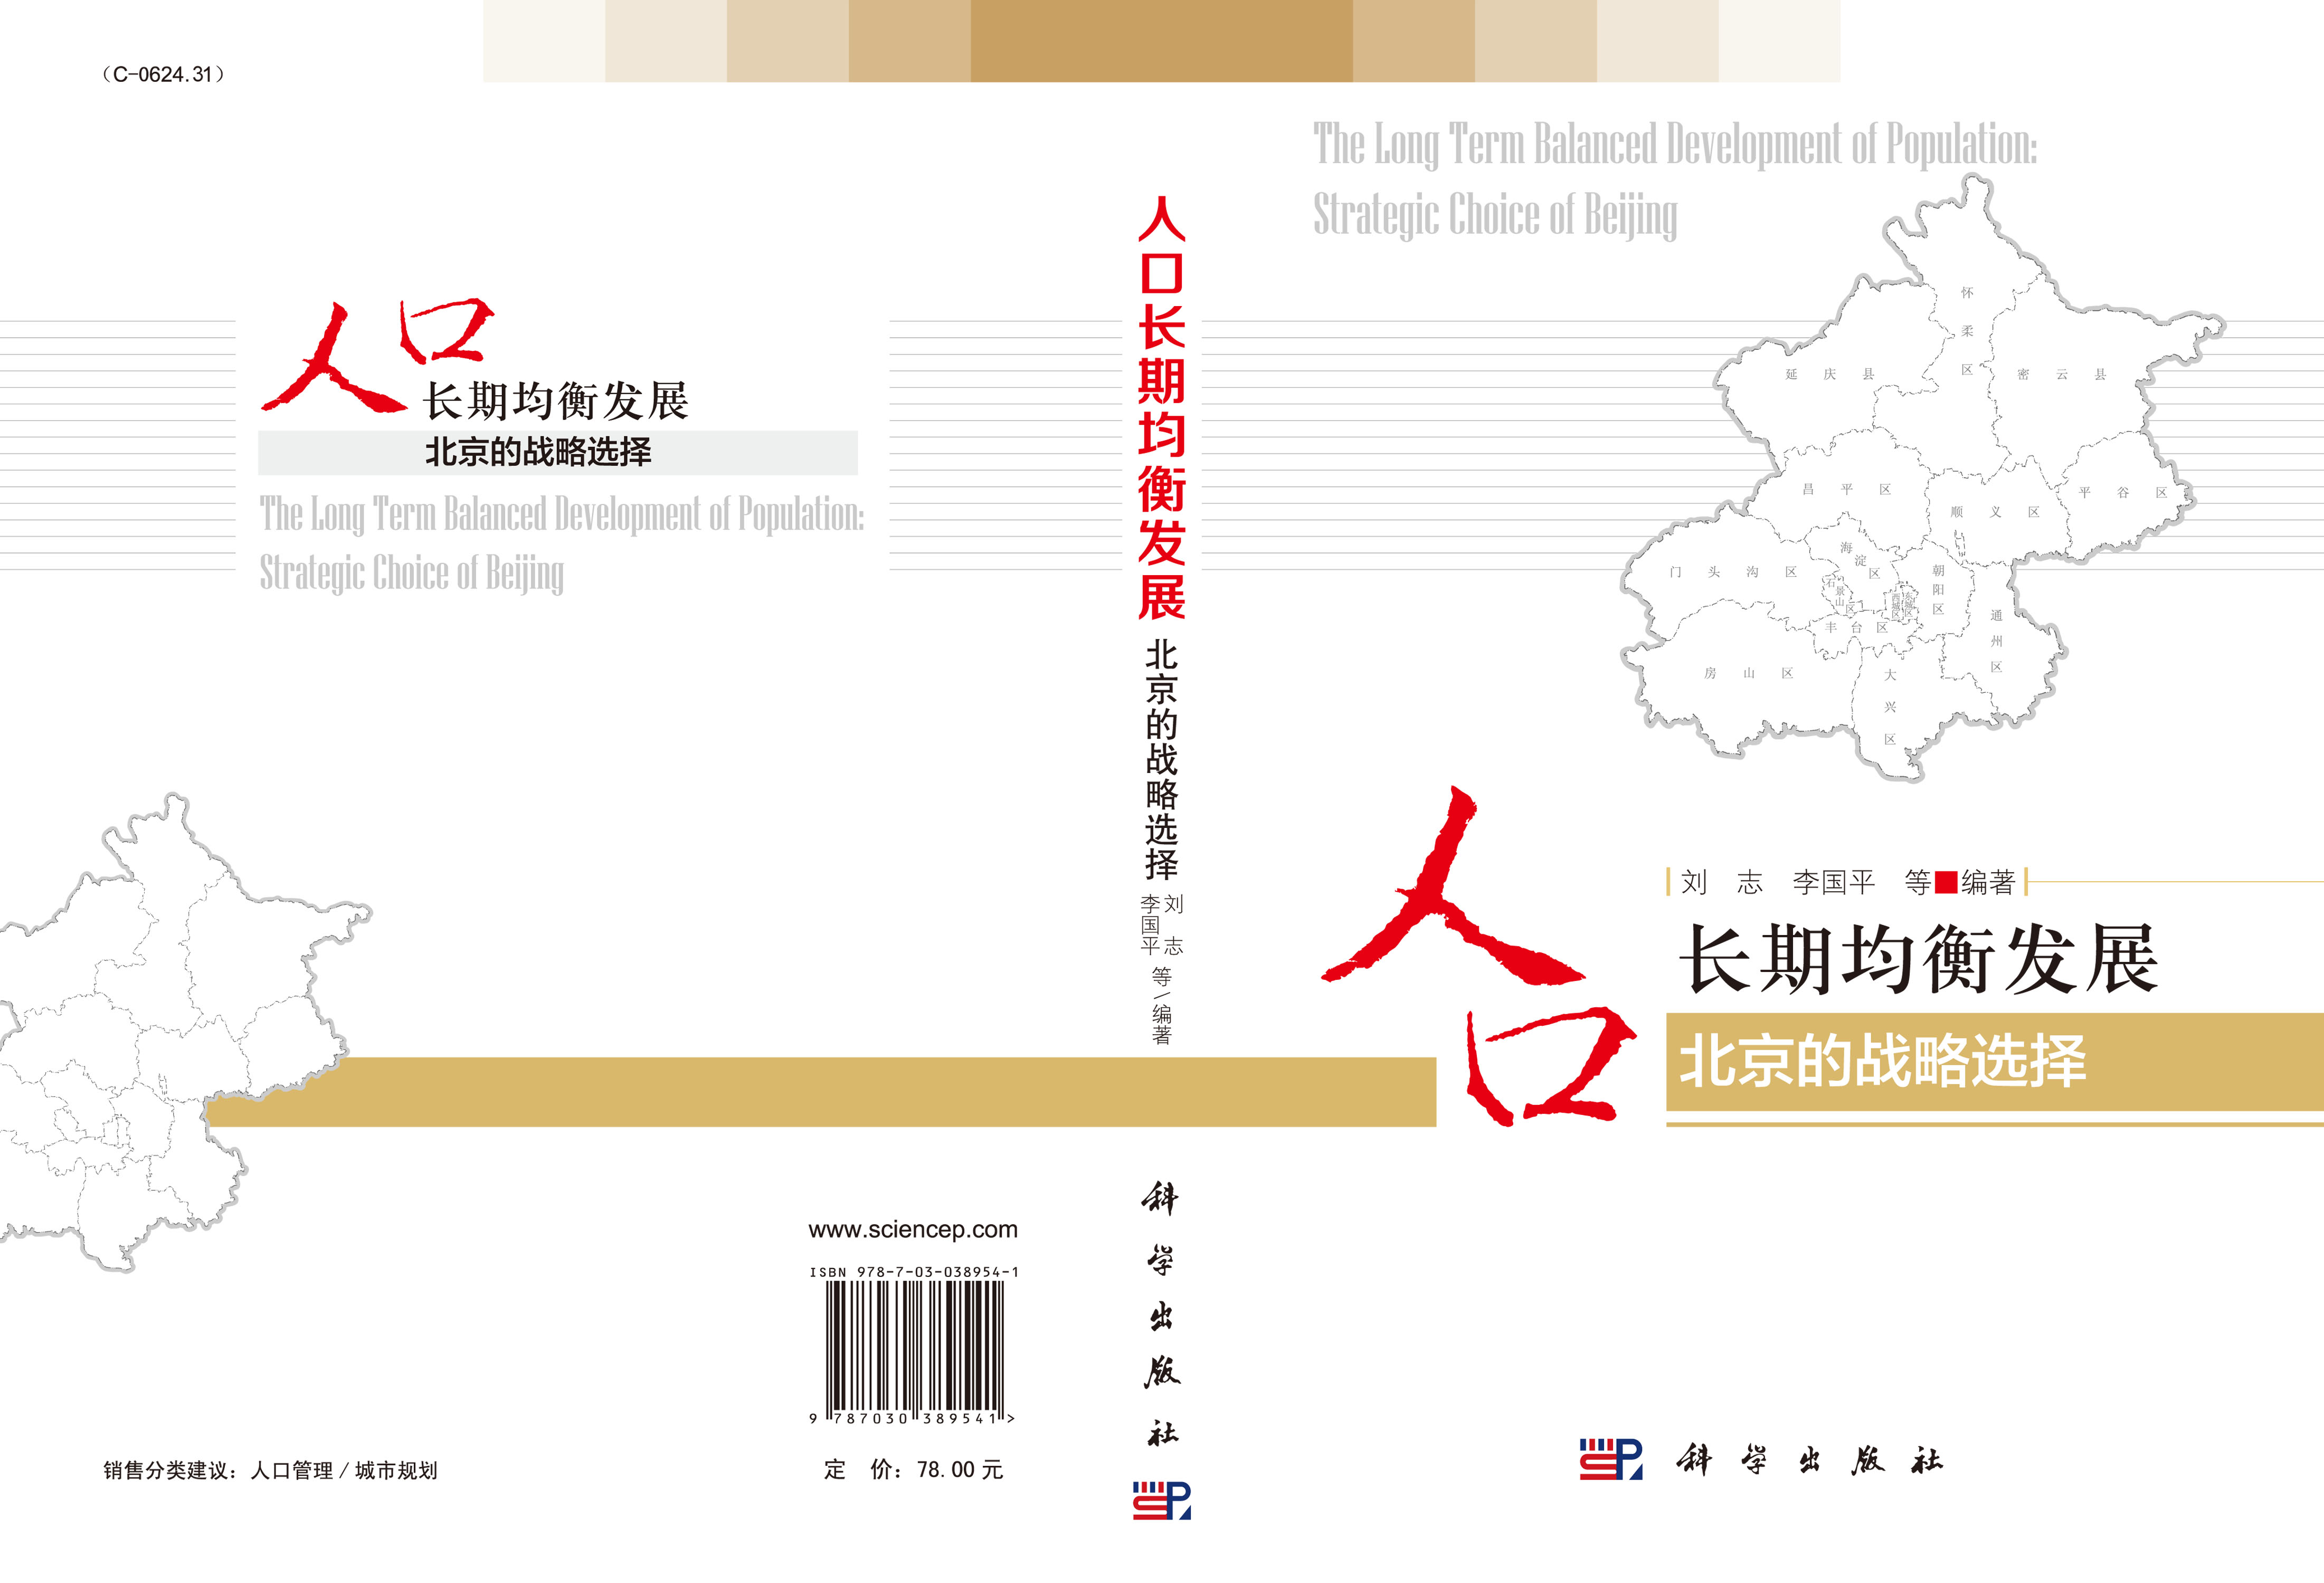 人口长期均衡发展——北京的战略选择